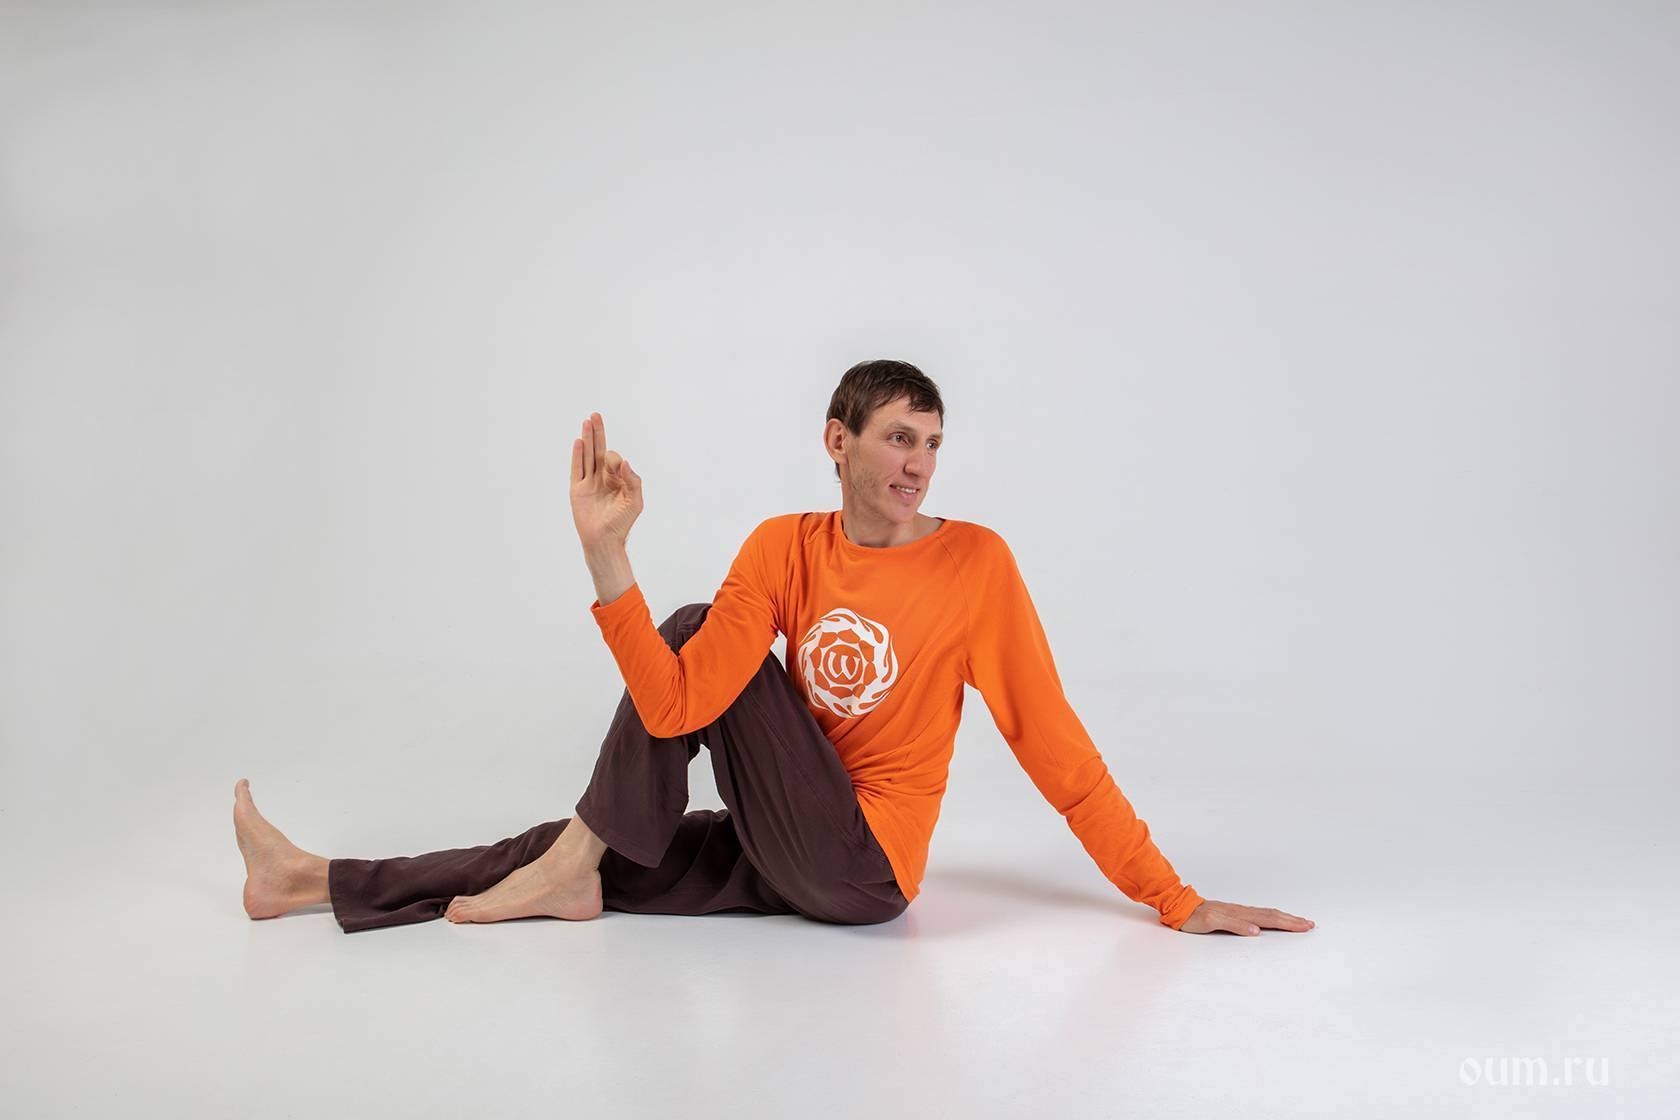 Секреты выполнения пашчимоттанасаны, техника позы наклона к ногам сидя в йоге